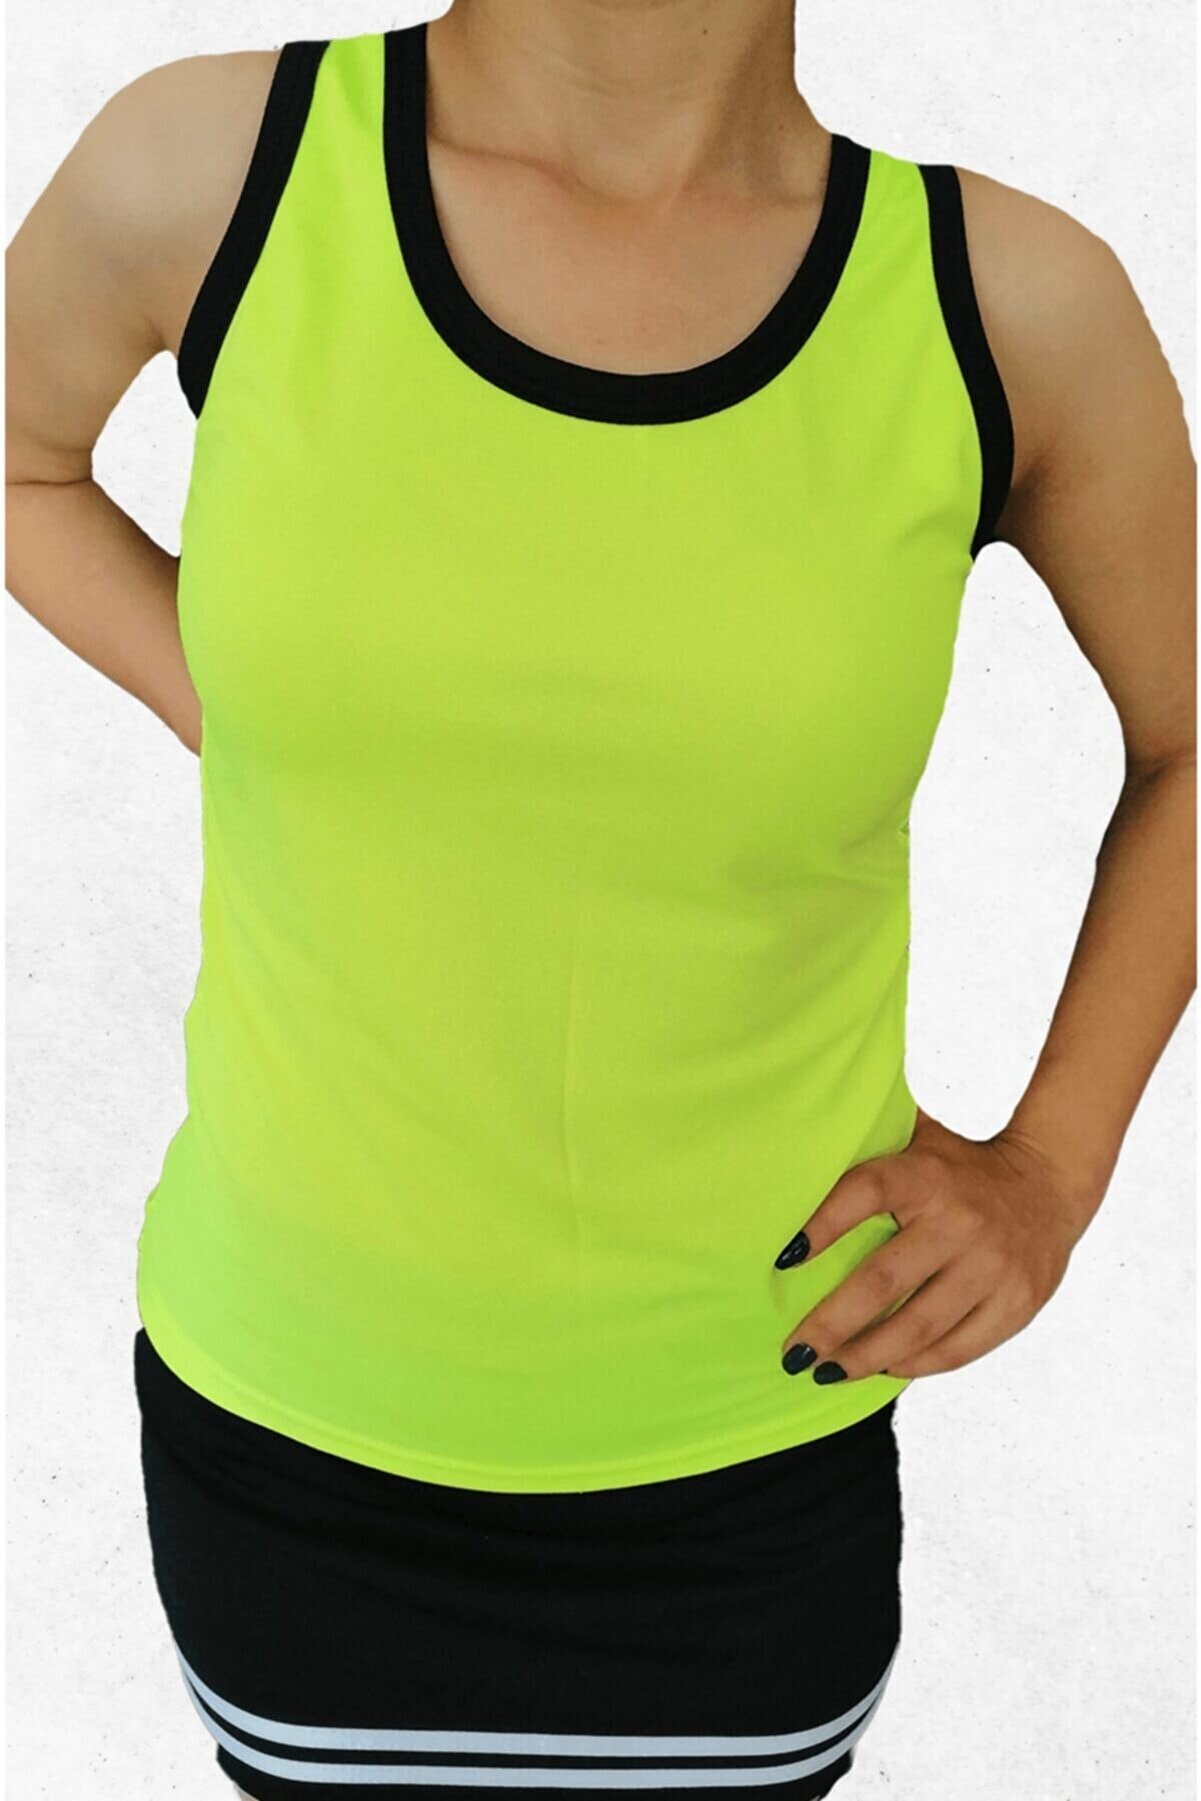 Modapalace Kadın Neon Yeşil Sporcu Atleti